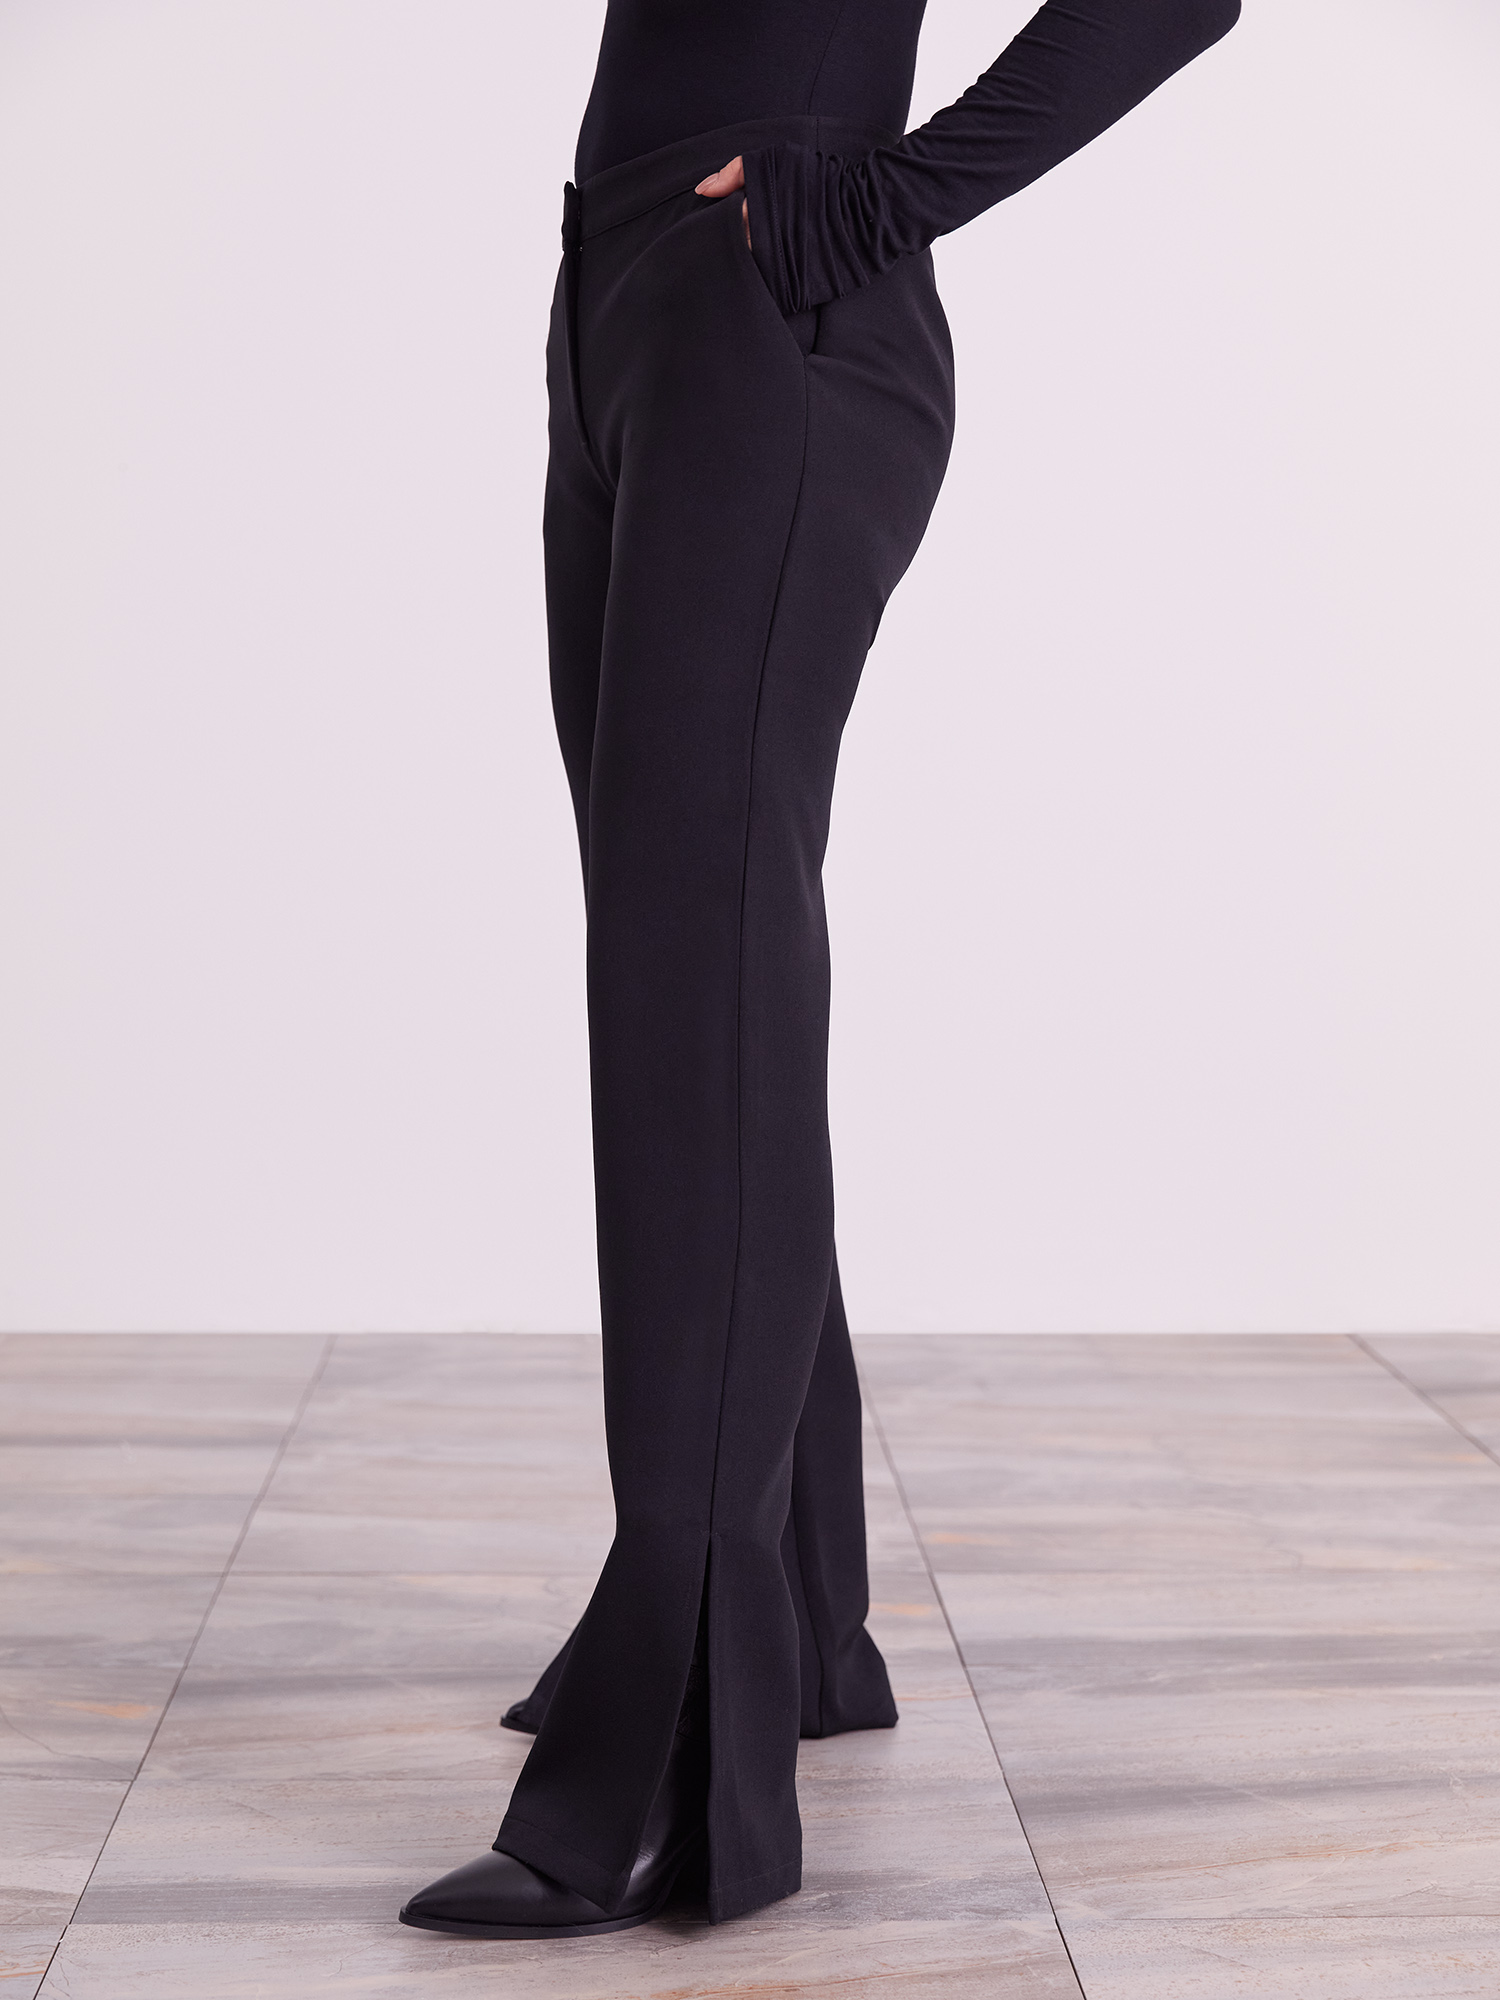 qgNjf Odzież  x Iconic by Tatiana GB Spodnie Edina w kolorze Czarnym 